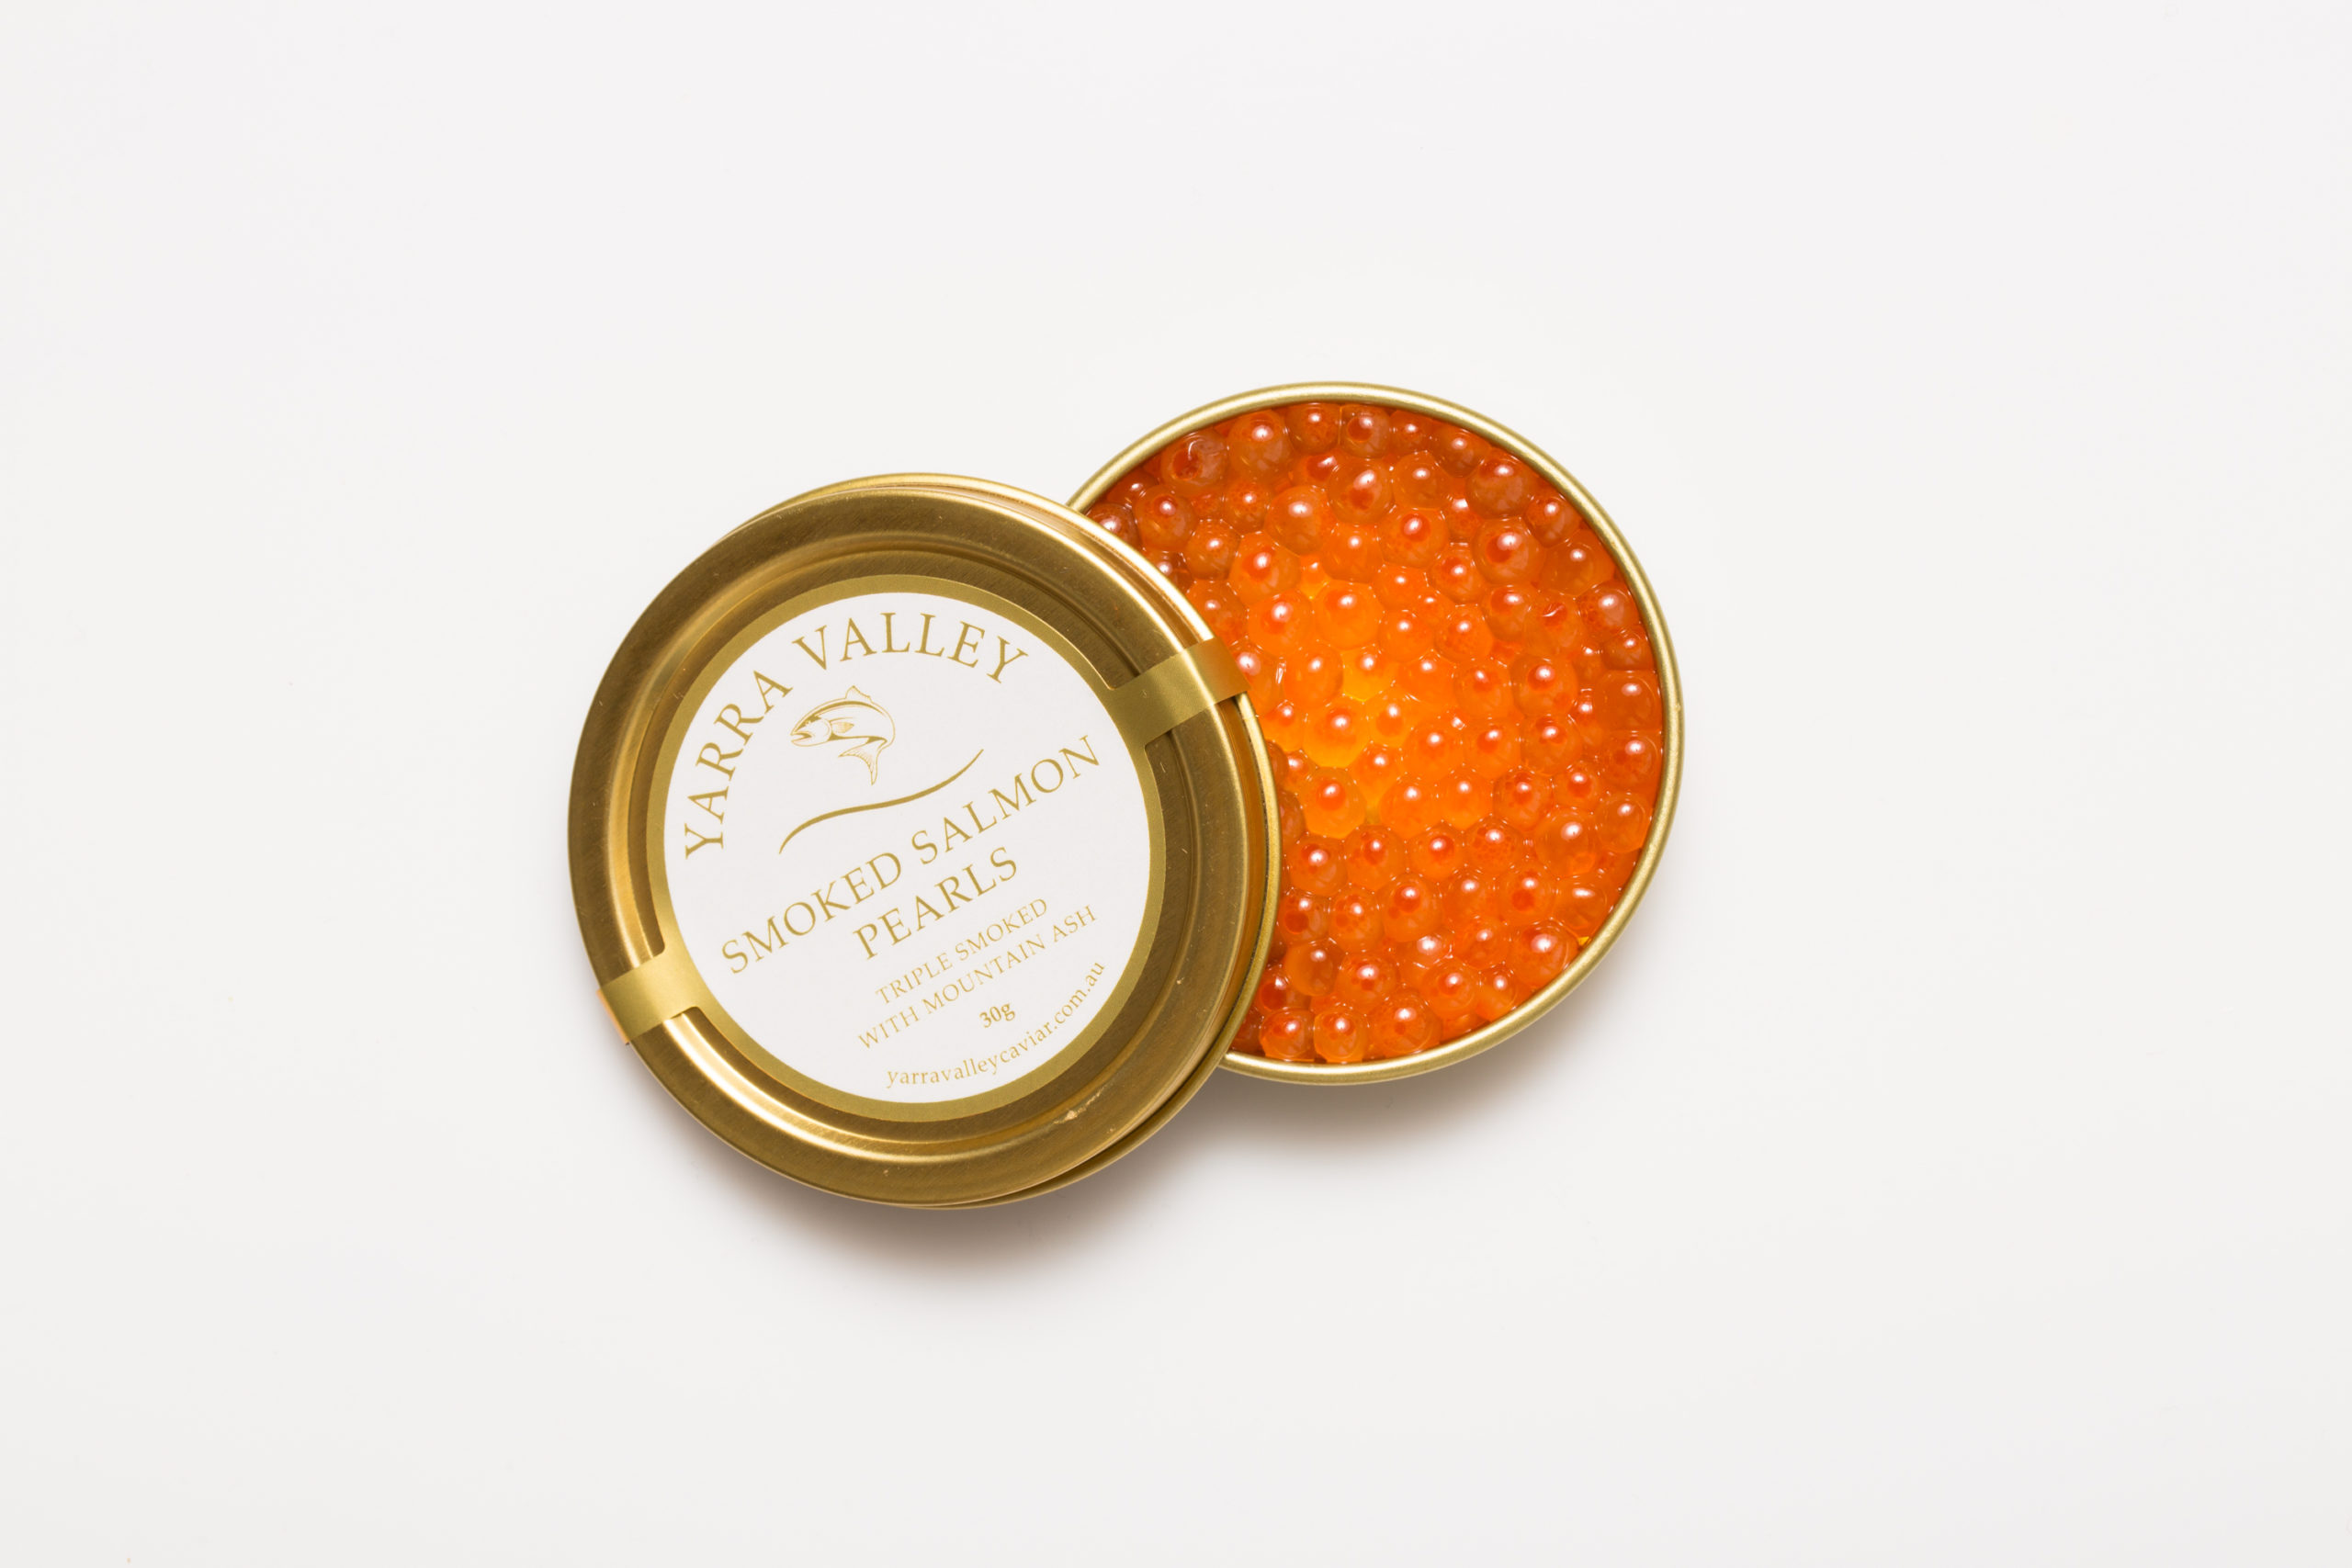 Caviar - Smoked Salmon Pearls - 30g tin - Yarra Valley Caviar